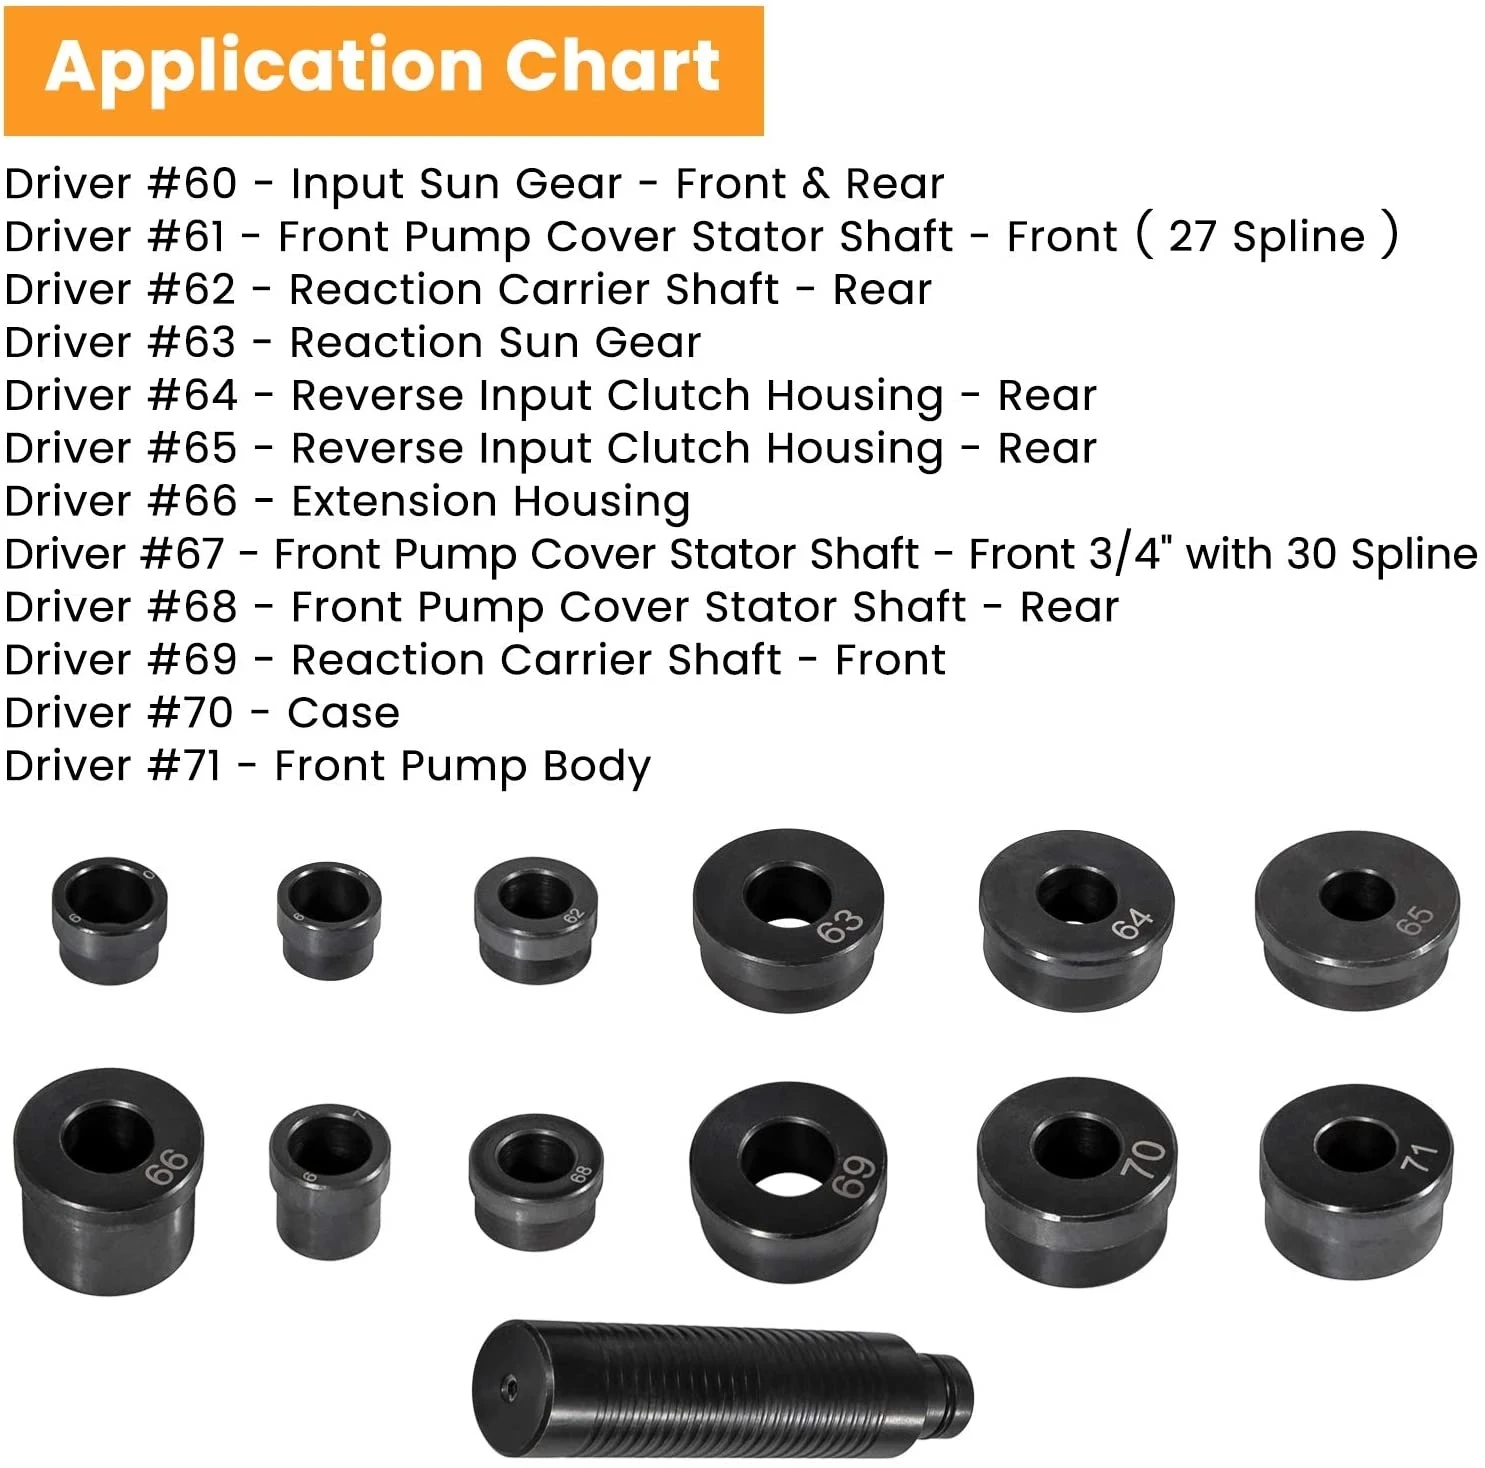 Transmissions Bushing Bearing Seal Installer Remover Tool Kit 13pcs T-0220-700R4 Bushing Driver Kit for GM 700-R4 4L60 4l60E 4L65E 